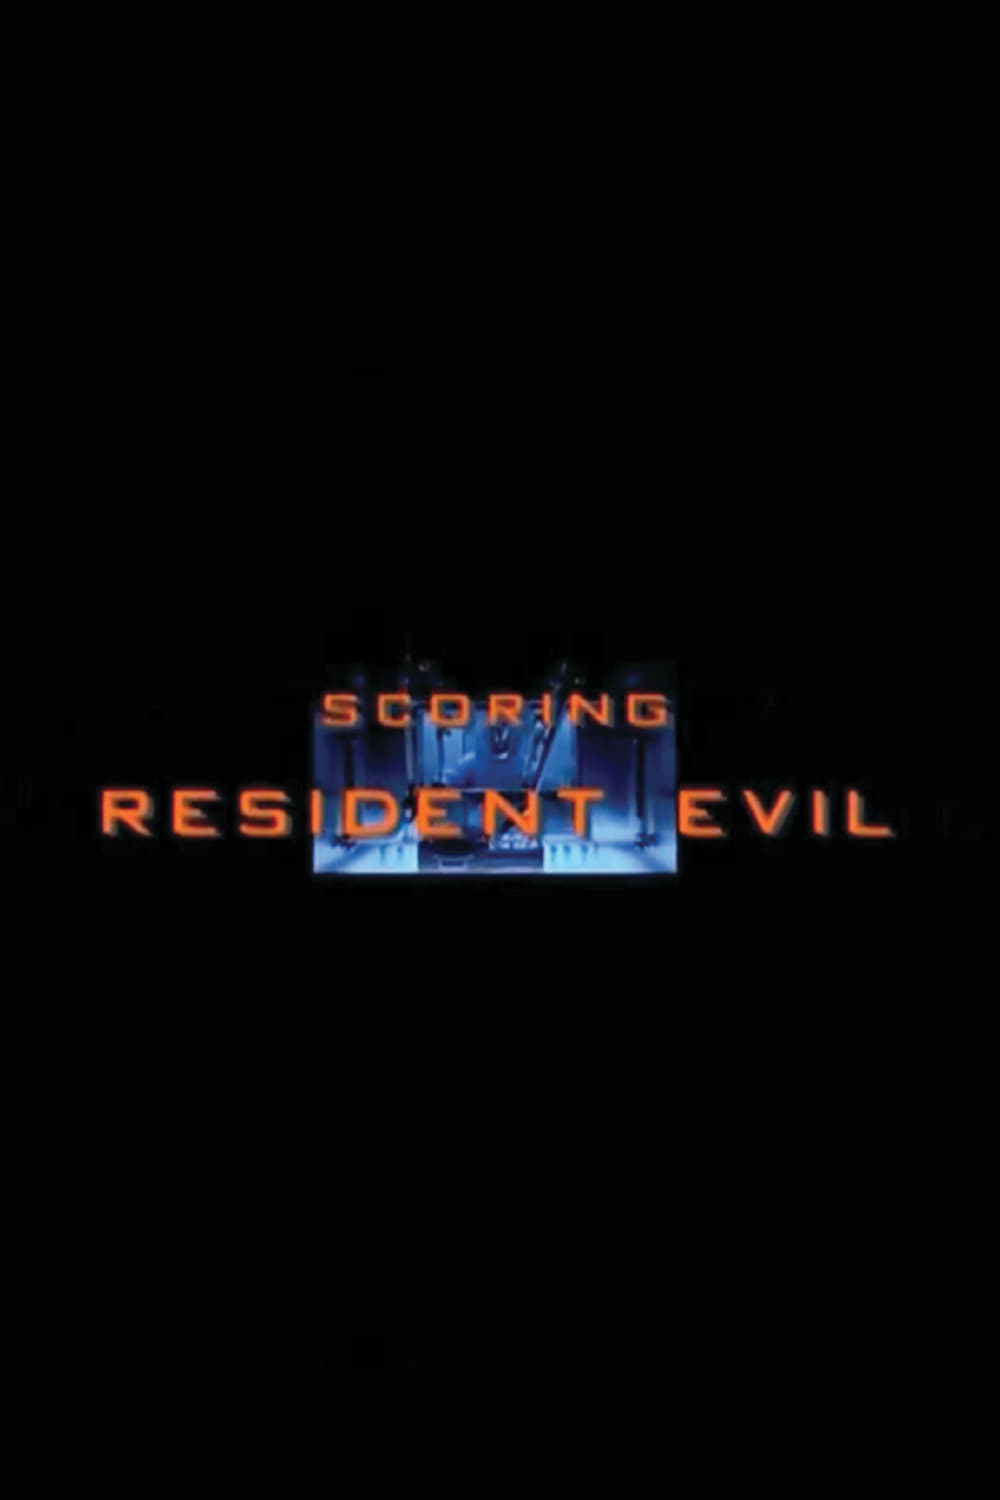 Scoring Resident Evil